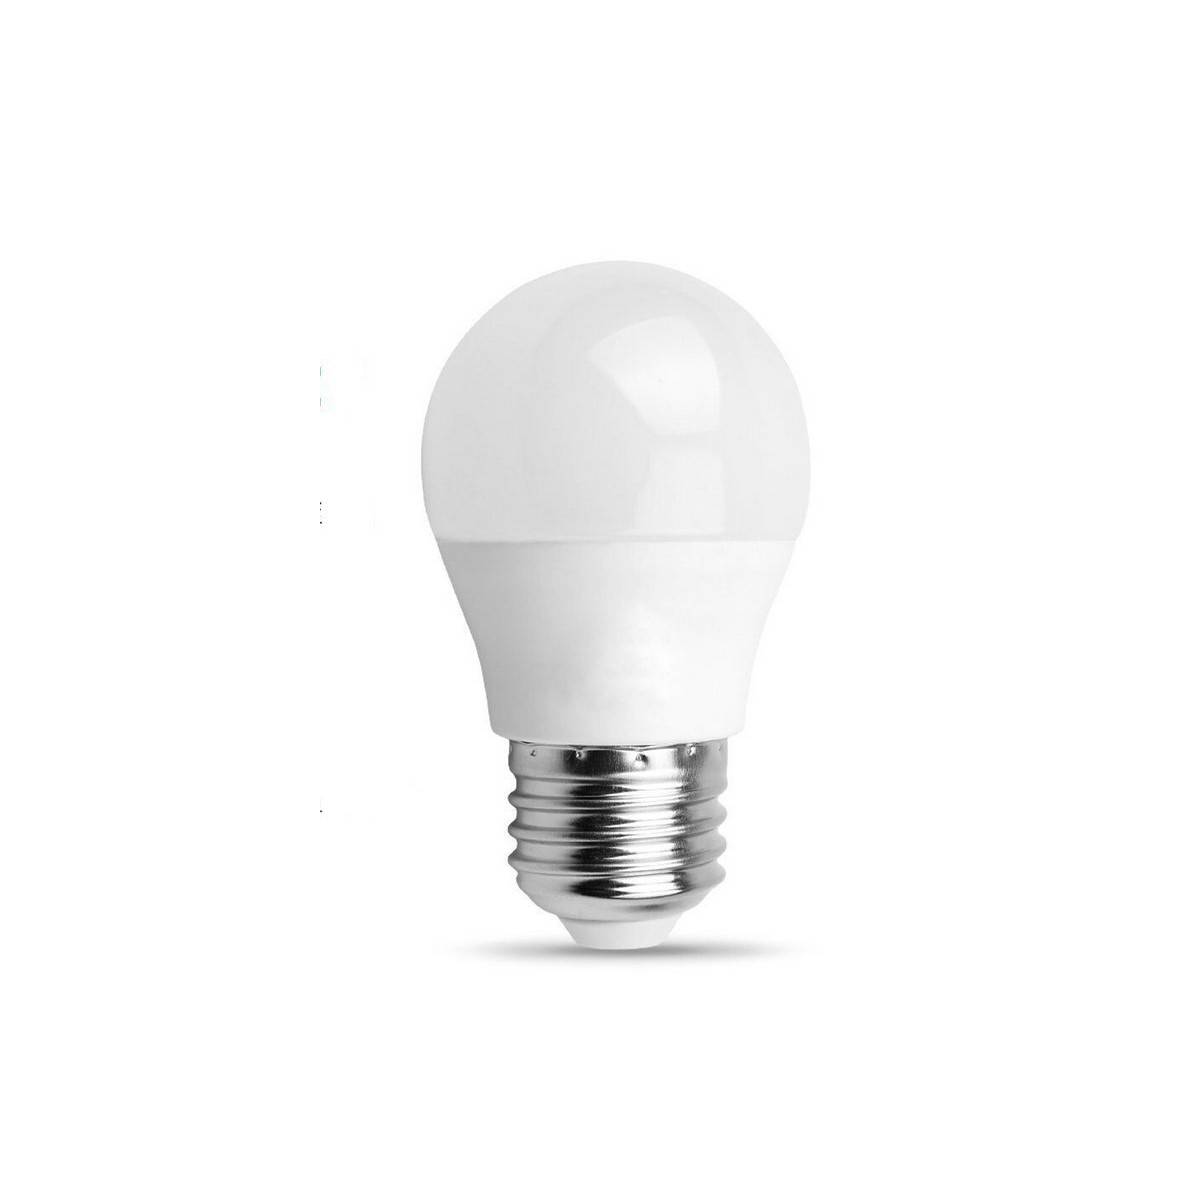 LED-Glühbirne E27